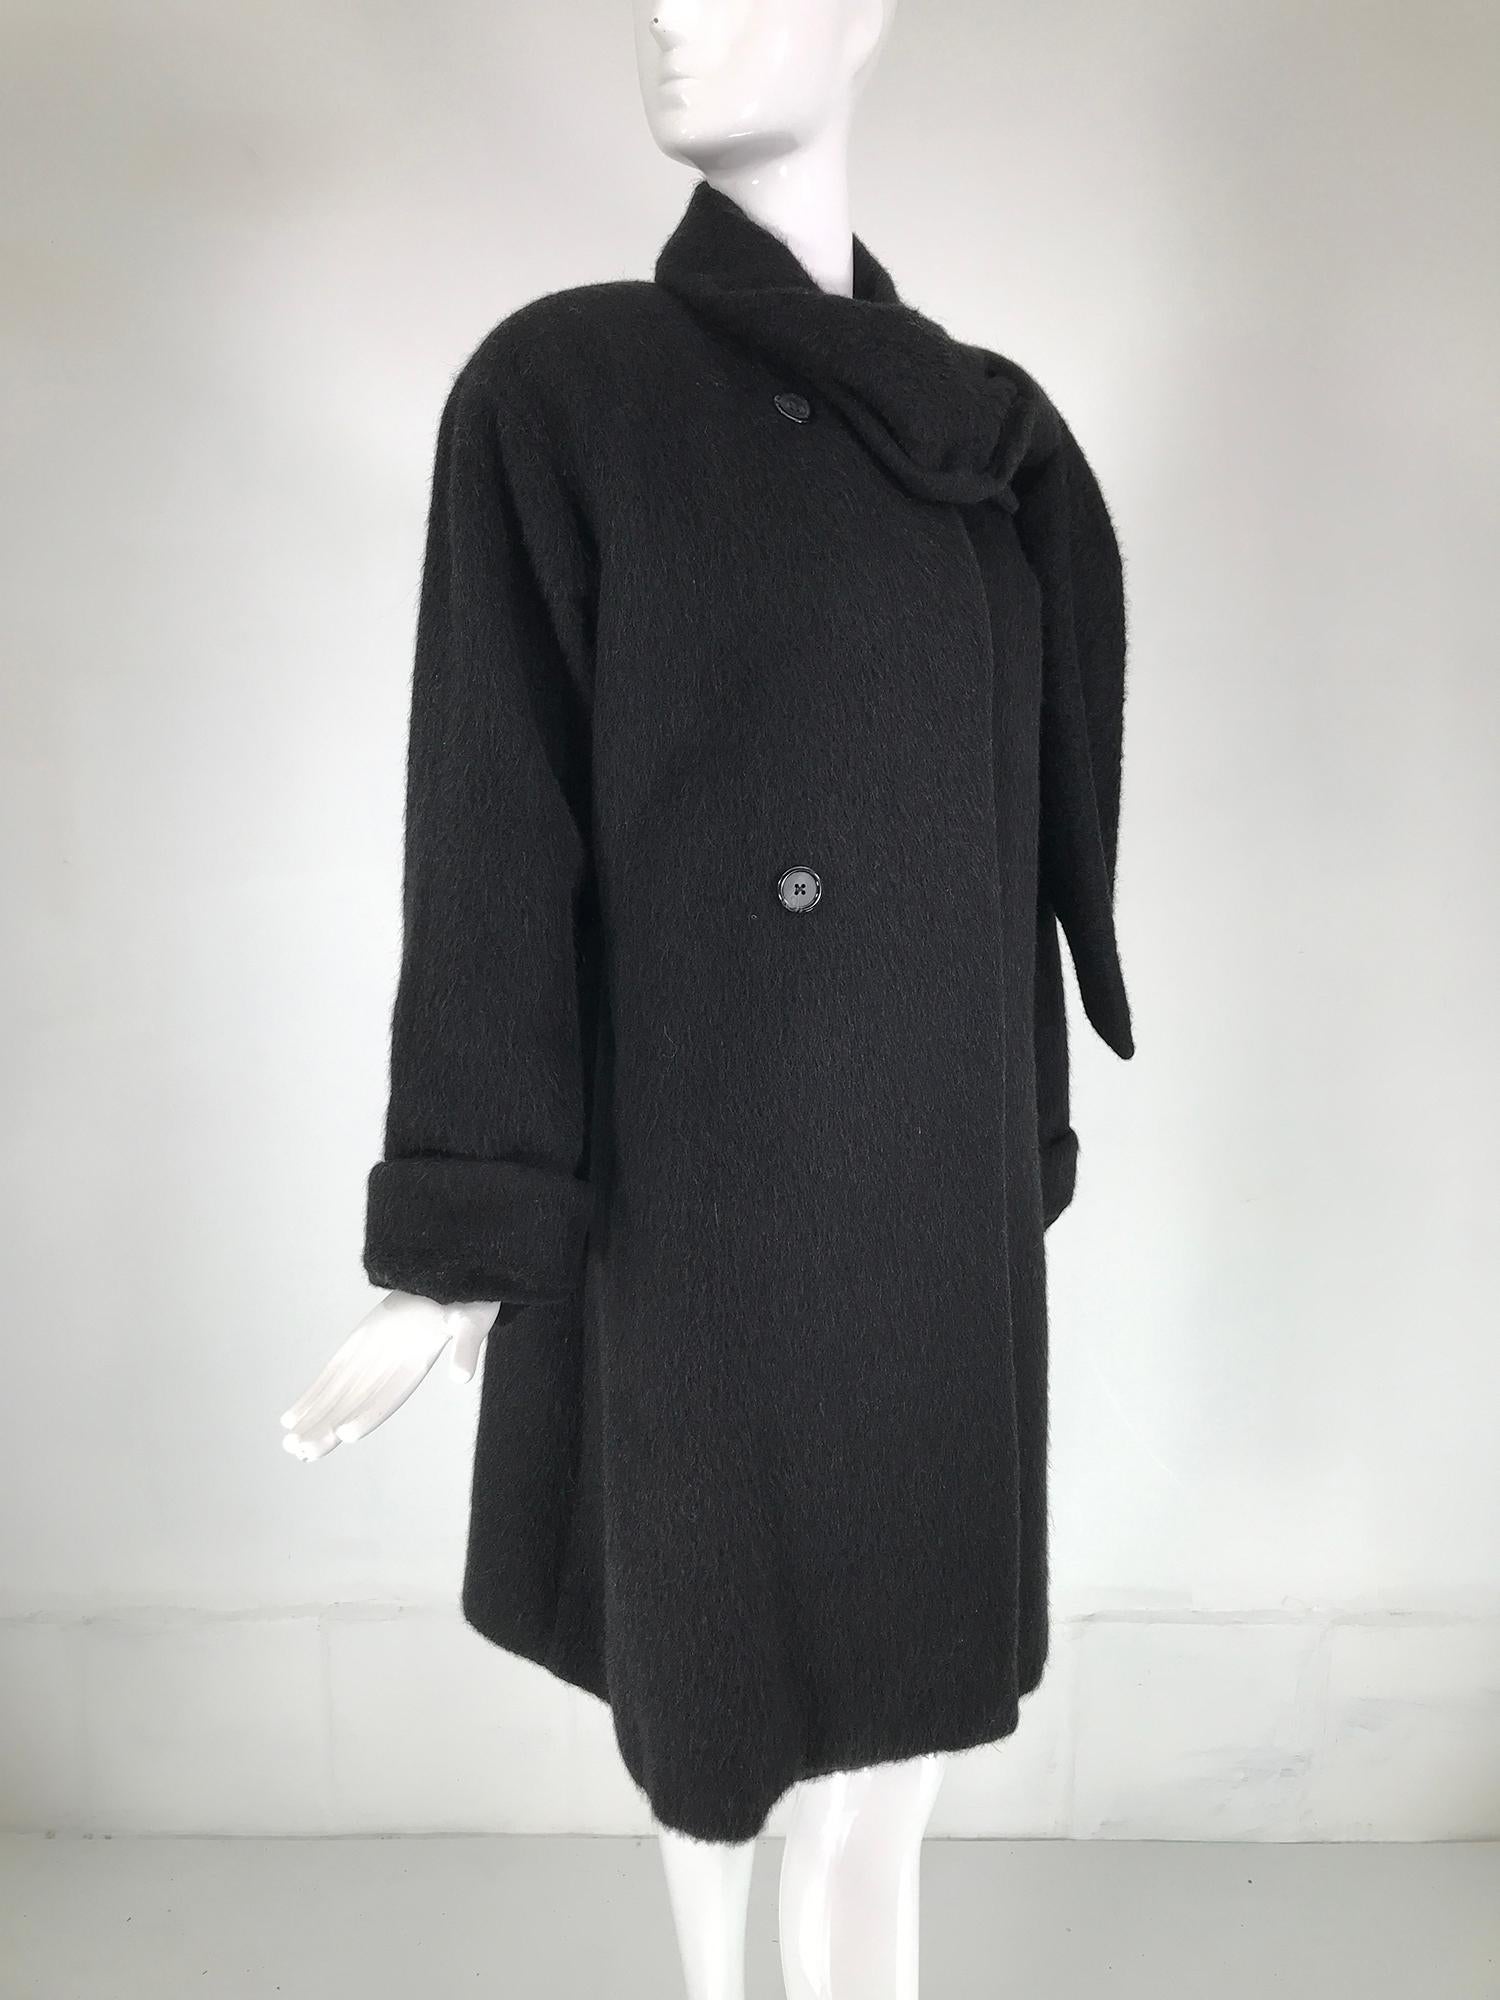 Anthrazitfarbener Wintermantel aus Mohair und Wolle von Christian Dior aus den 1980er Jahren. Der Mantel hat einen asymmetrischen Ausschnitt mit einem Revers auf der einen und einem langen, breiten Schal auf der anderen Seite. Wenn der Mantel im